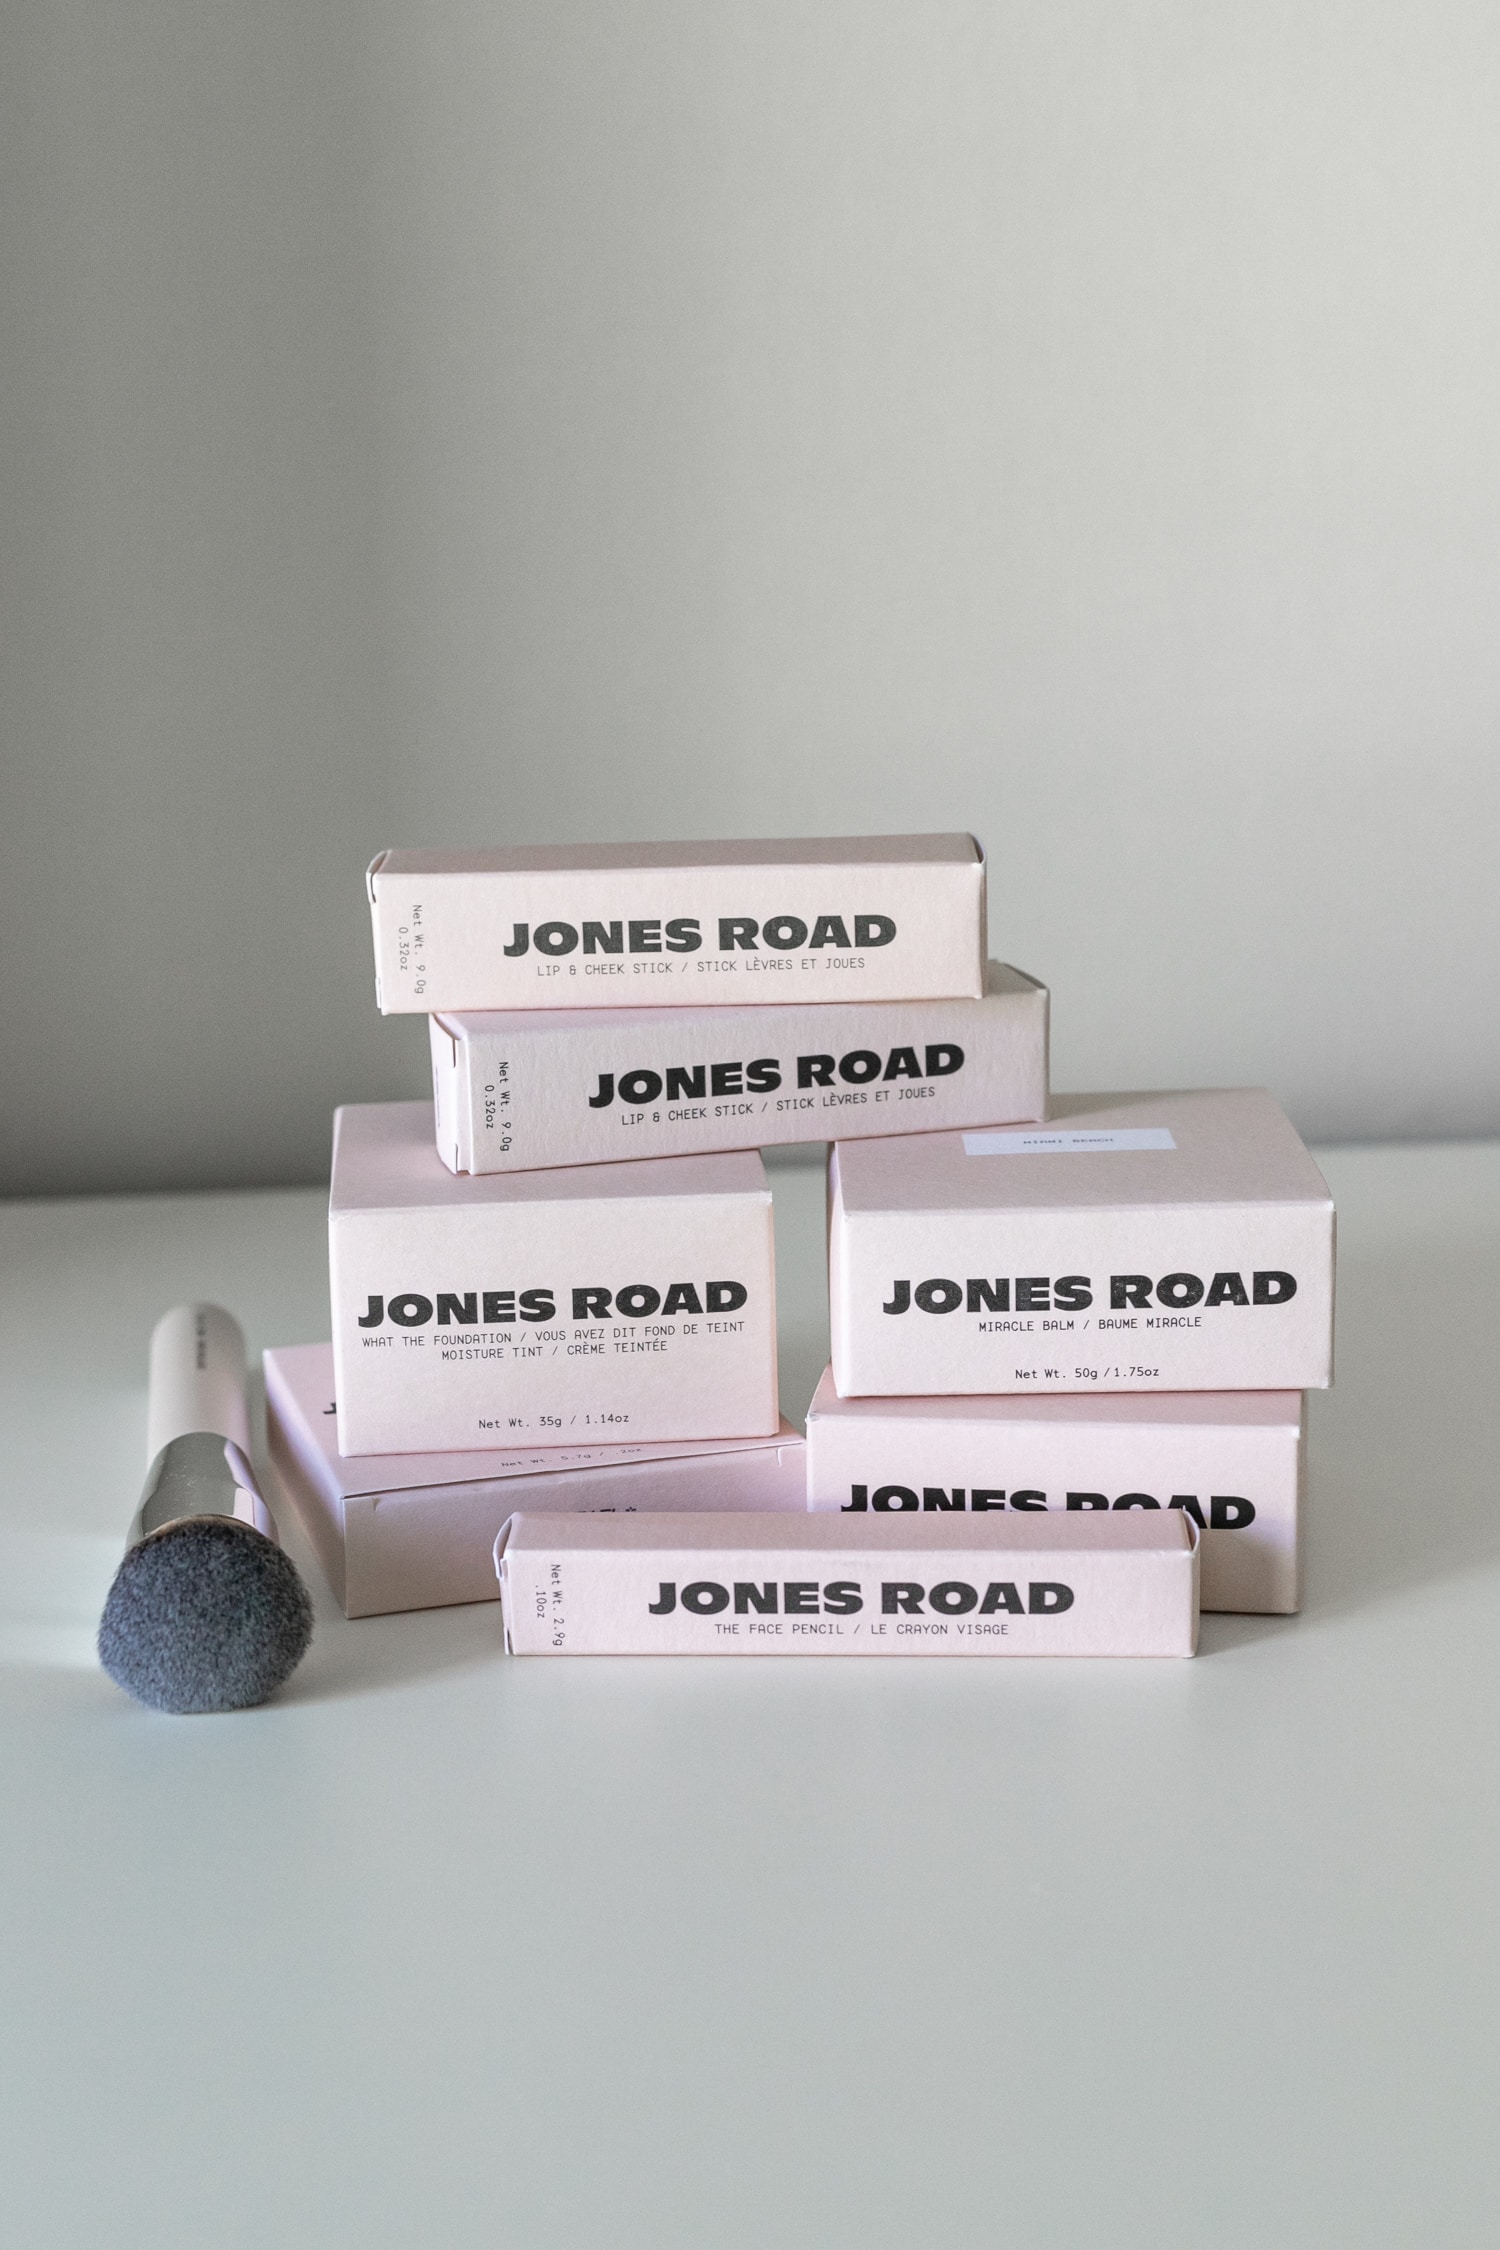 Jones Road delivery Ireland